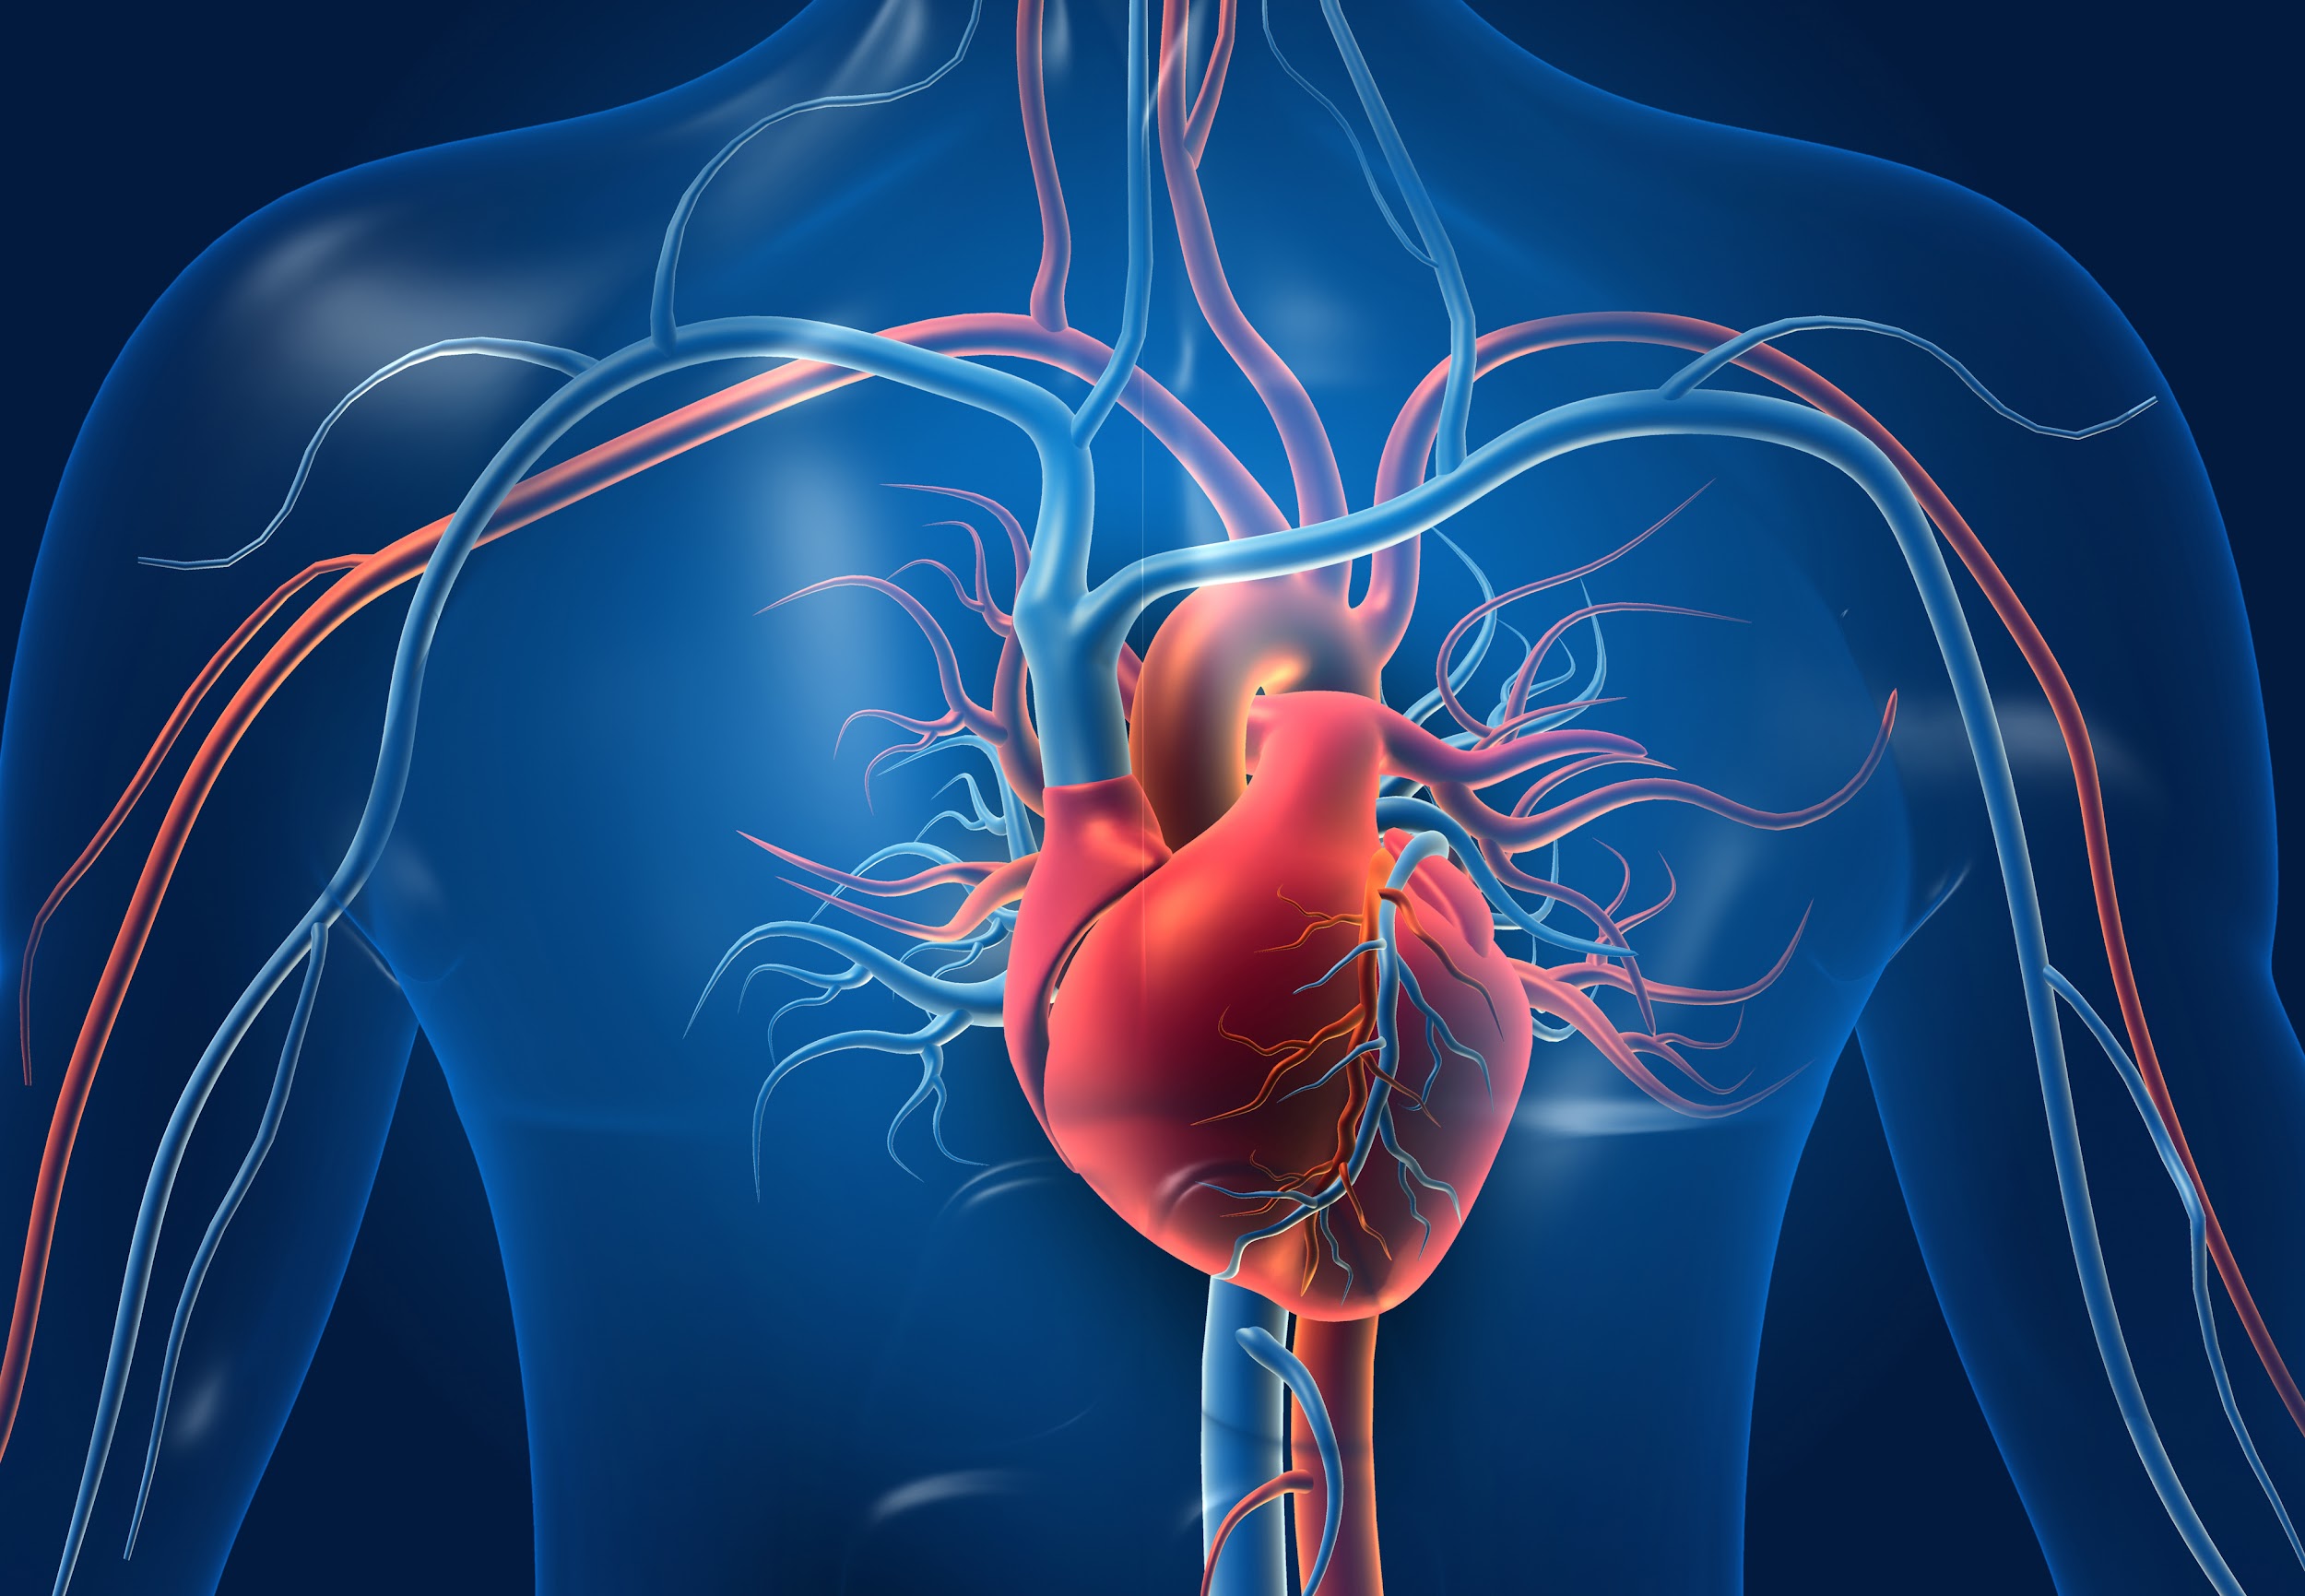 Paredes do coração aumentam de espessura durante o envelhecimento, causando pressão alta. (Fonte: Shutterstock)